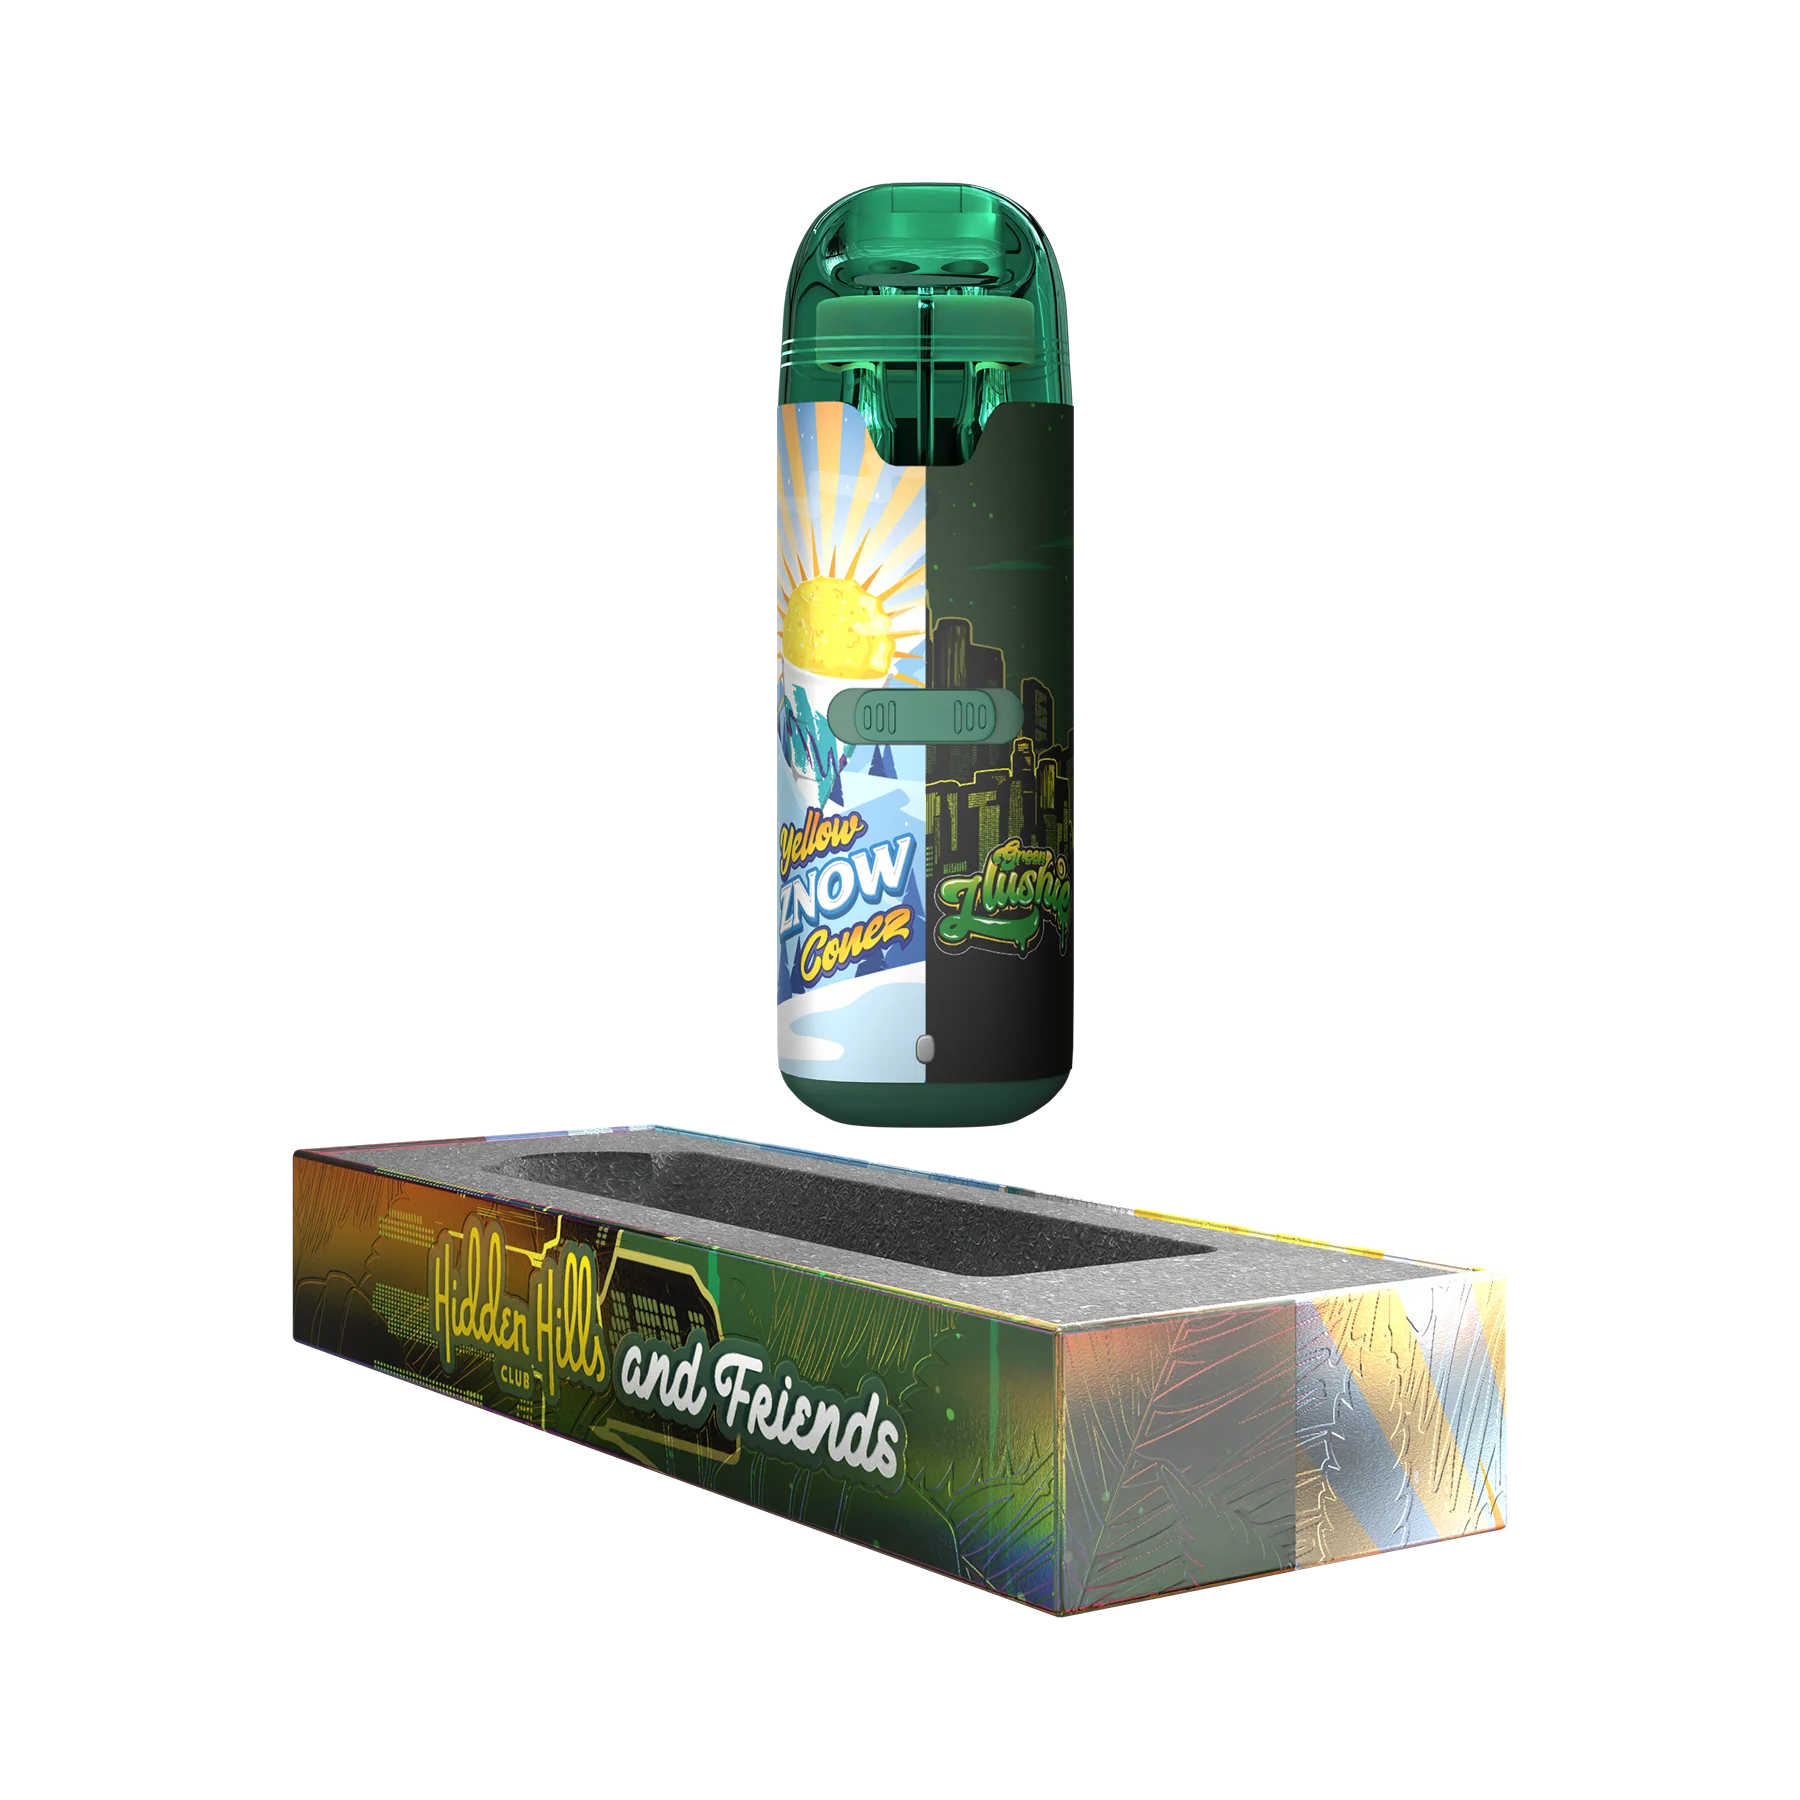 Hidden Hills Dual Flavor THC-A Disposable Vape Hidden Hills Yellow Znow Cones / Green Slushie  